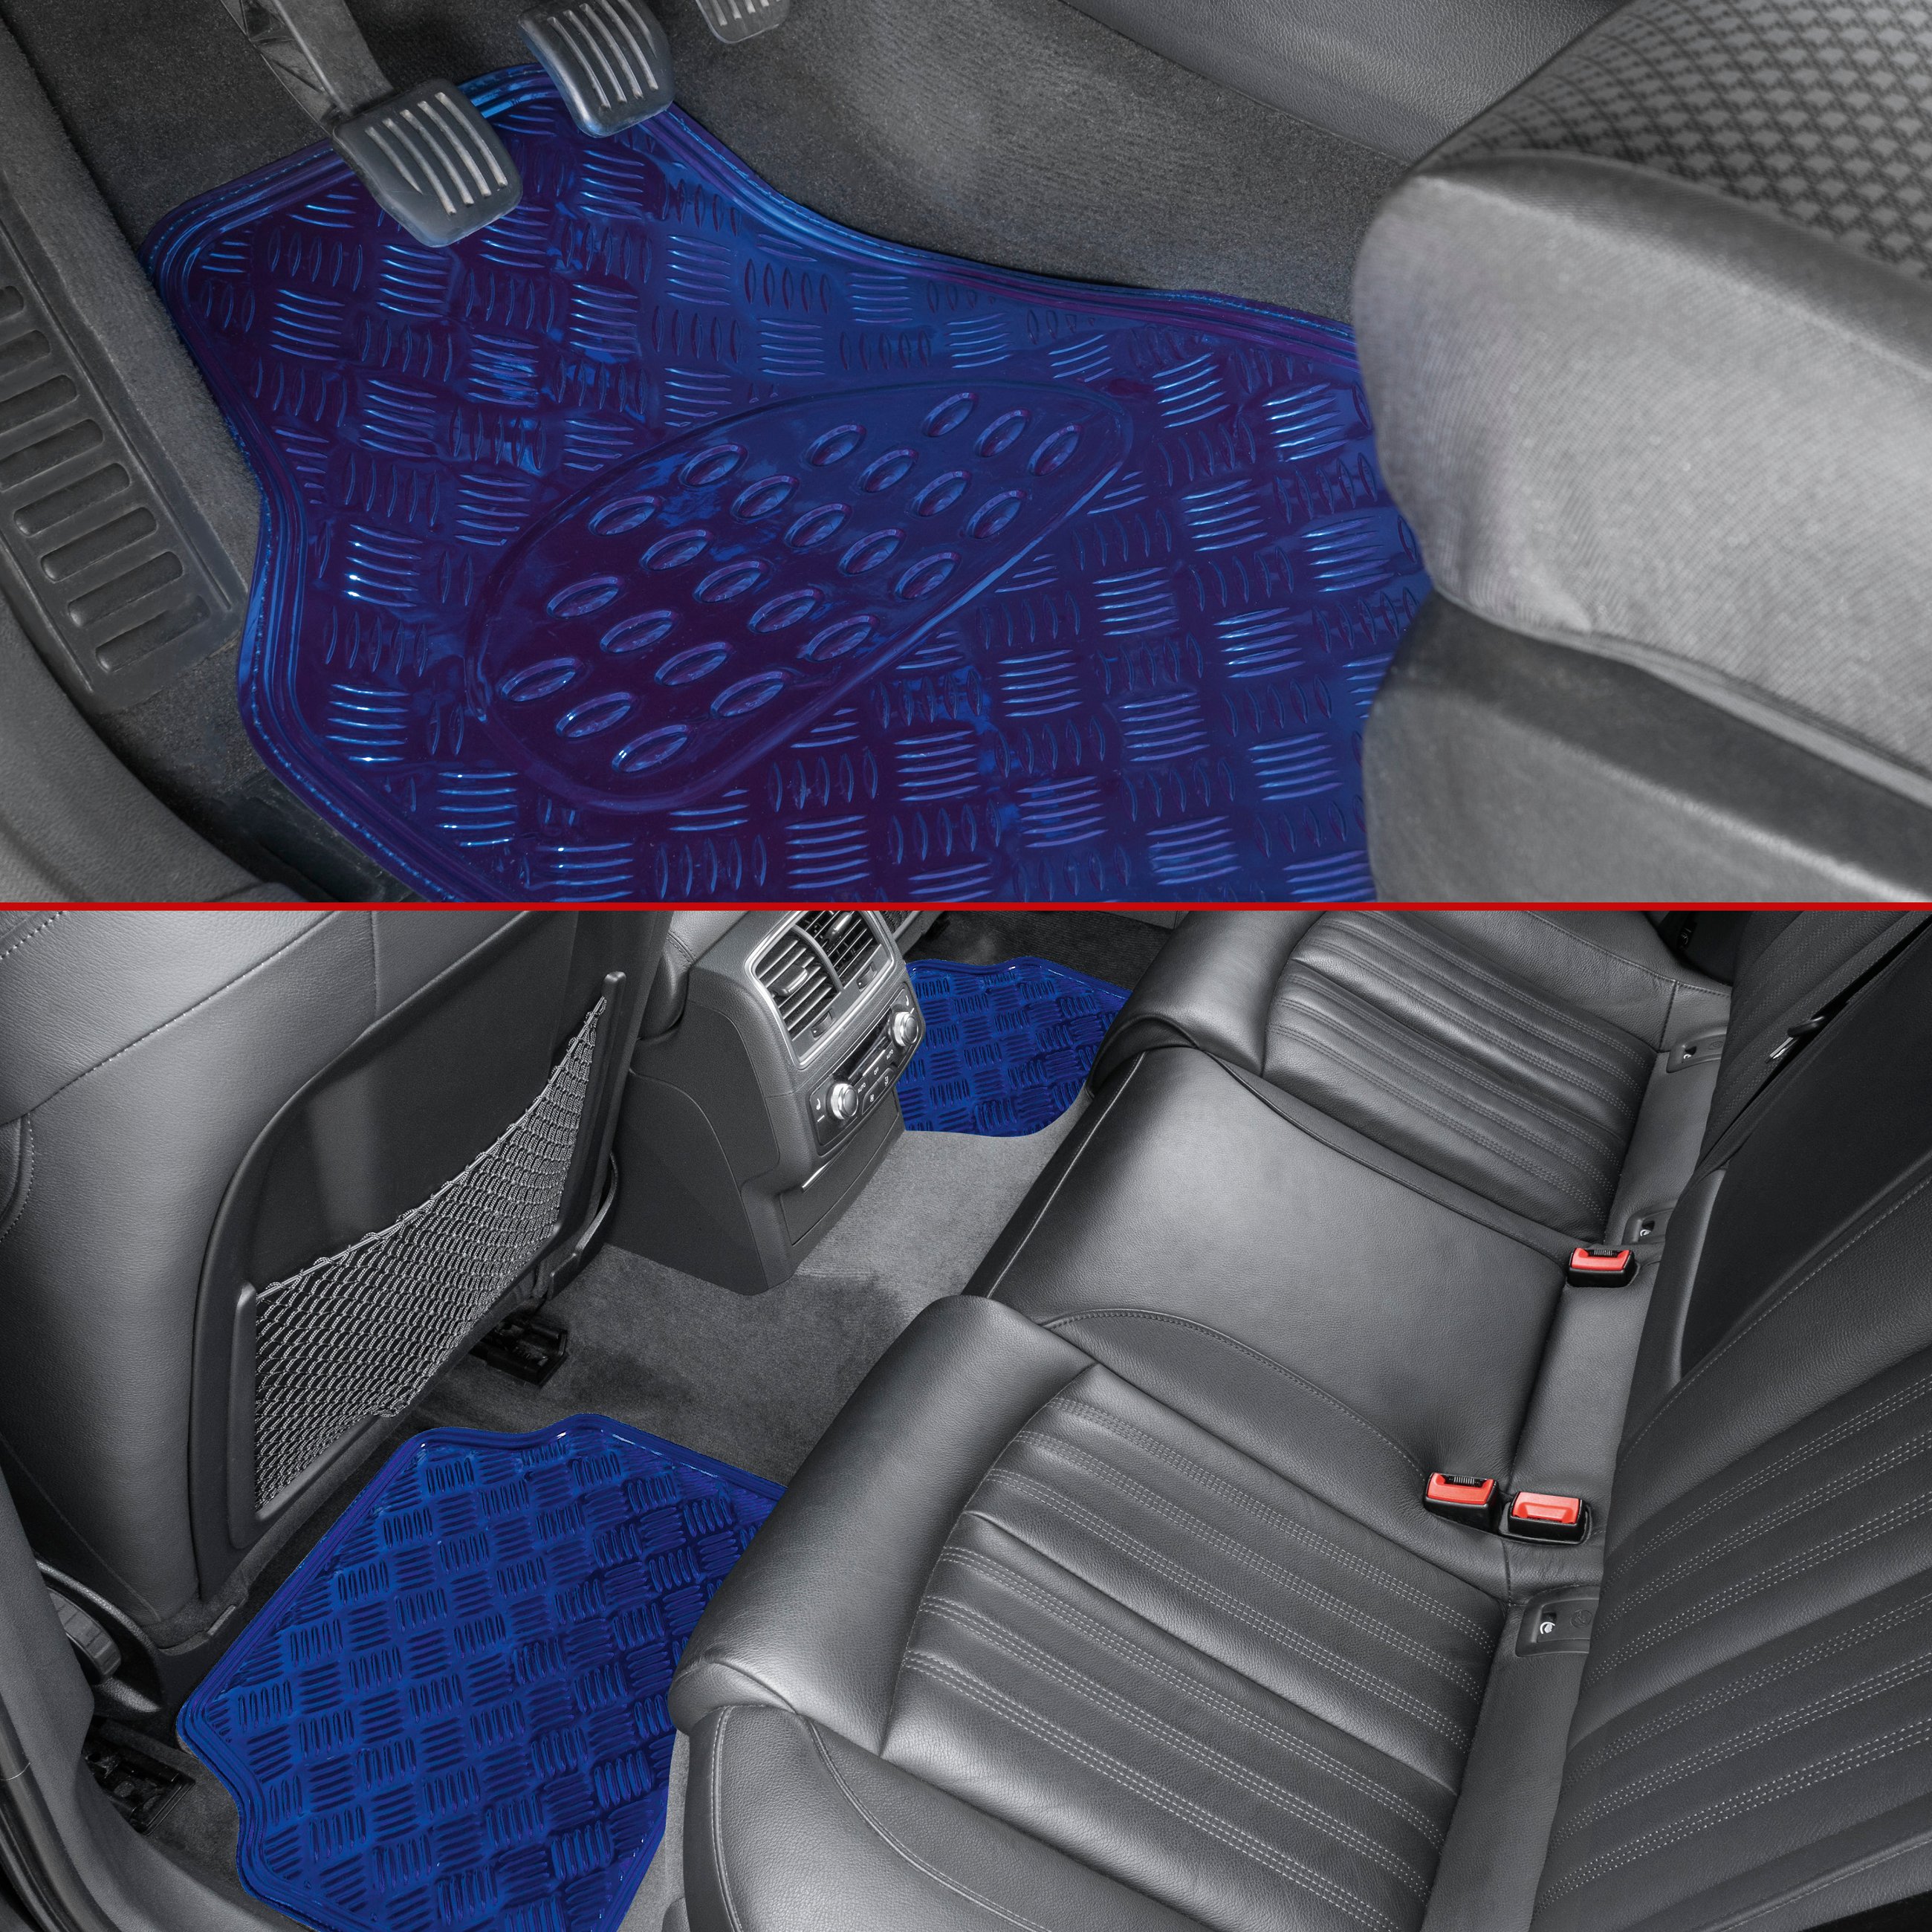 Car Rubber matss Metallic checker plate look blue maxi